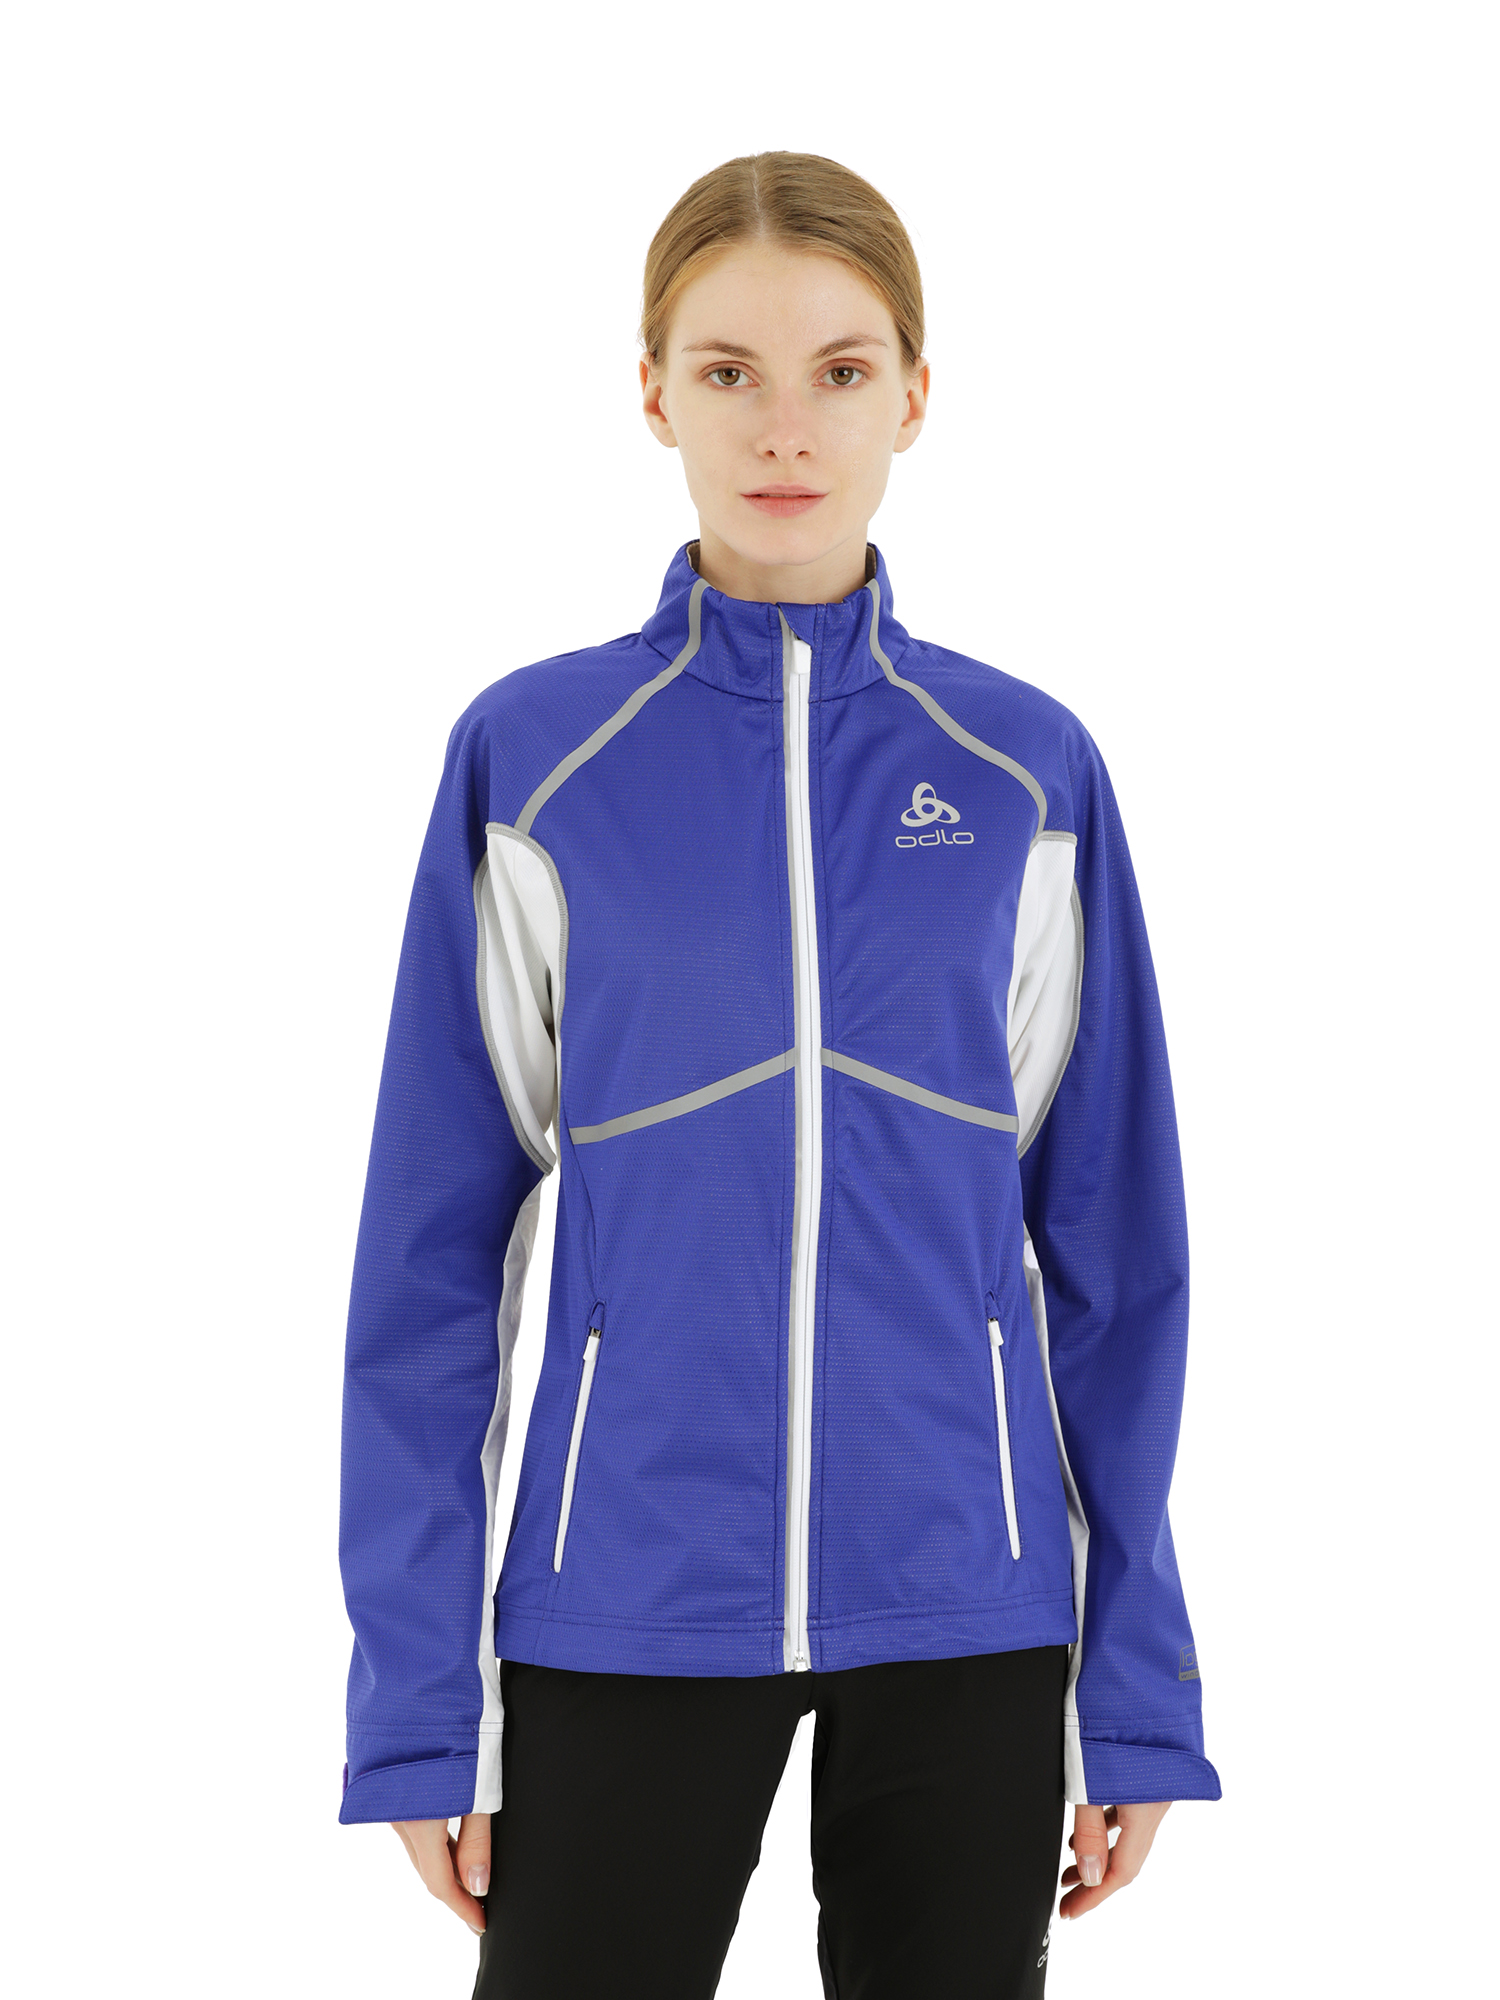 Спортивная ветровка женская Odlo Jacket Frequency X синяя XS